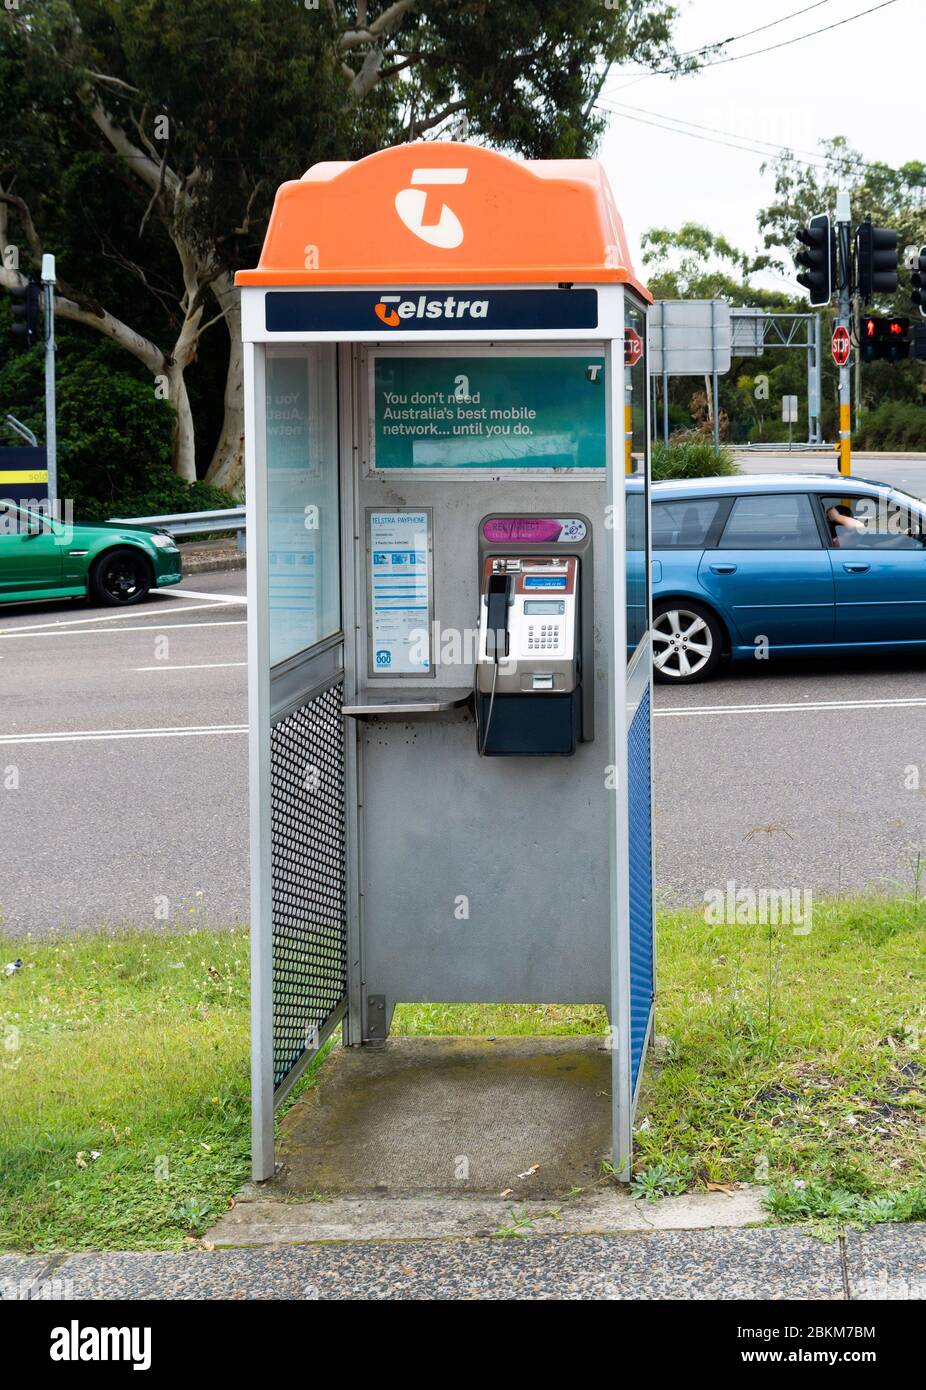 Una caja telefónica Telstra en Nueva Gales del Sur Foto de stock